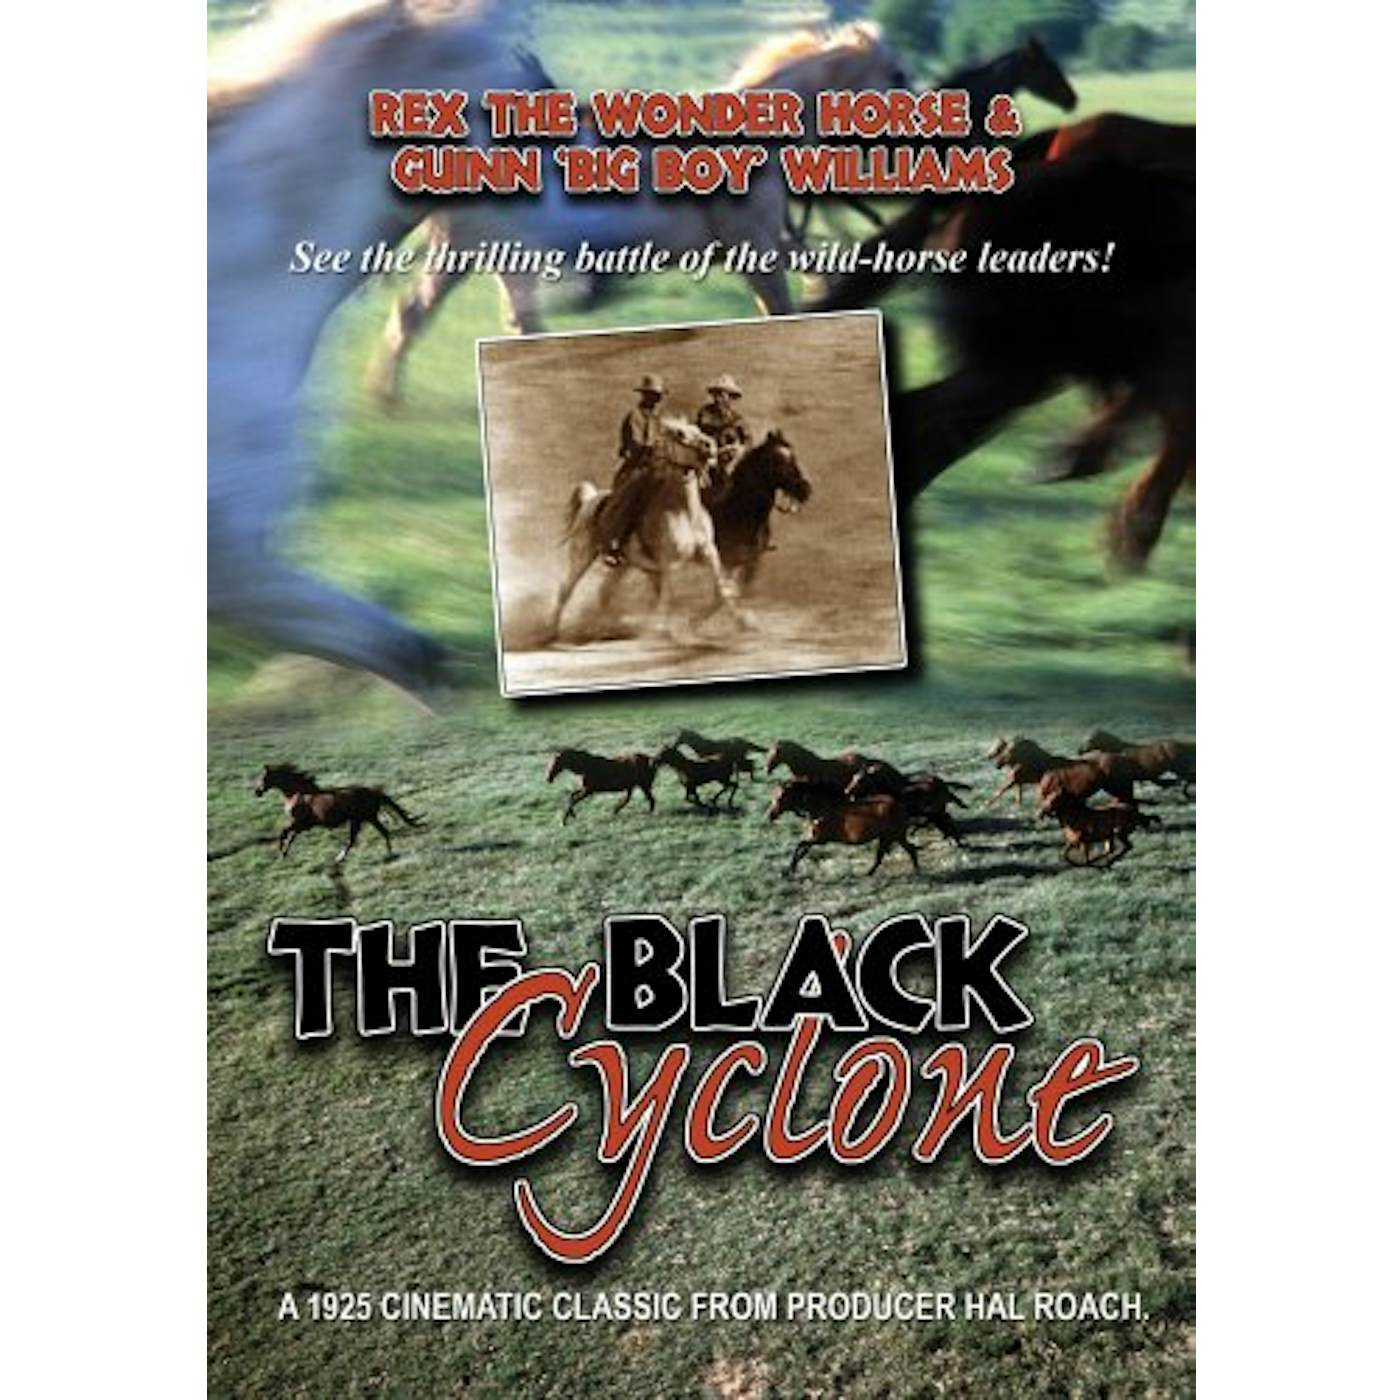 BLACK CYCLONE DVD